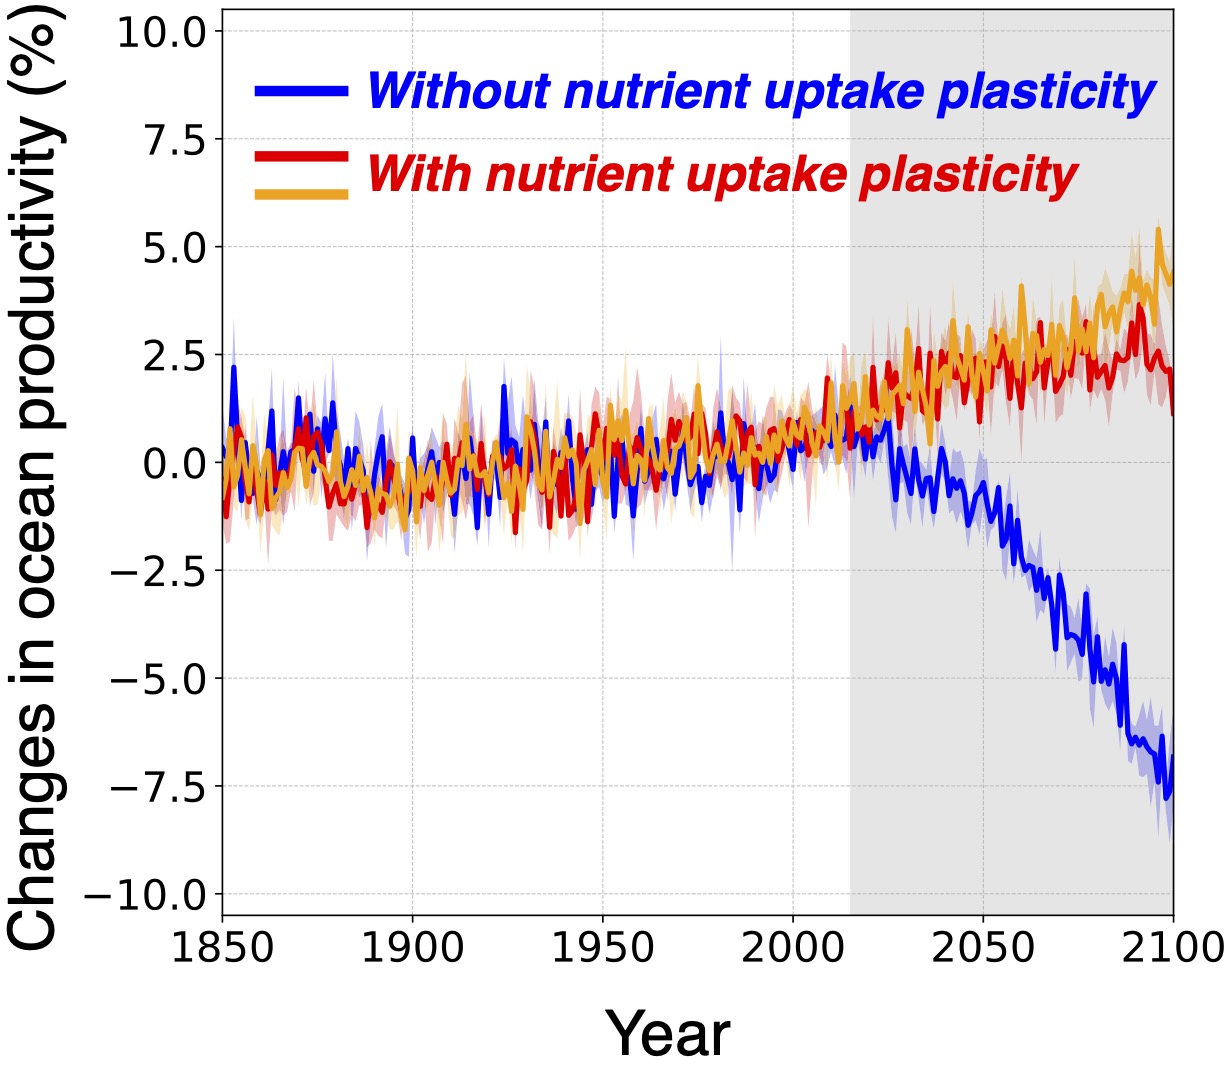 [그림 2] 시간에 따른 전 지구 해양 순생산량 변화
            바다 식물 플랑크톤의 영양 흡수 조절 능력을 가정한 기후 시뮬레이션 결과(빨간색 선, 주황색 선)에서는 기존 전망(파란색 선)과 달리 해양 순생산량이 증가하는 것으로 나타났다.